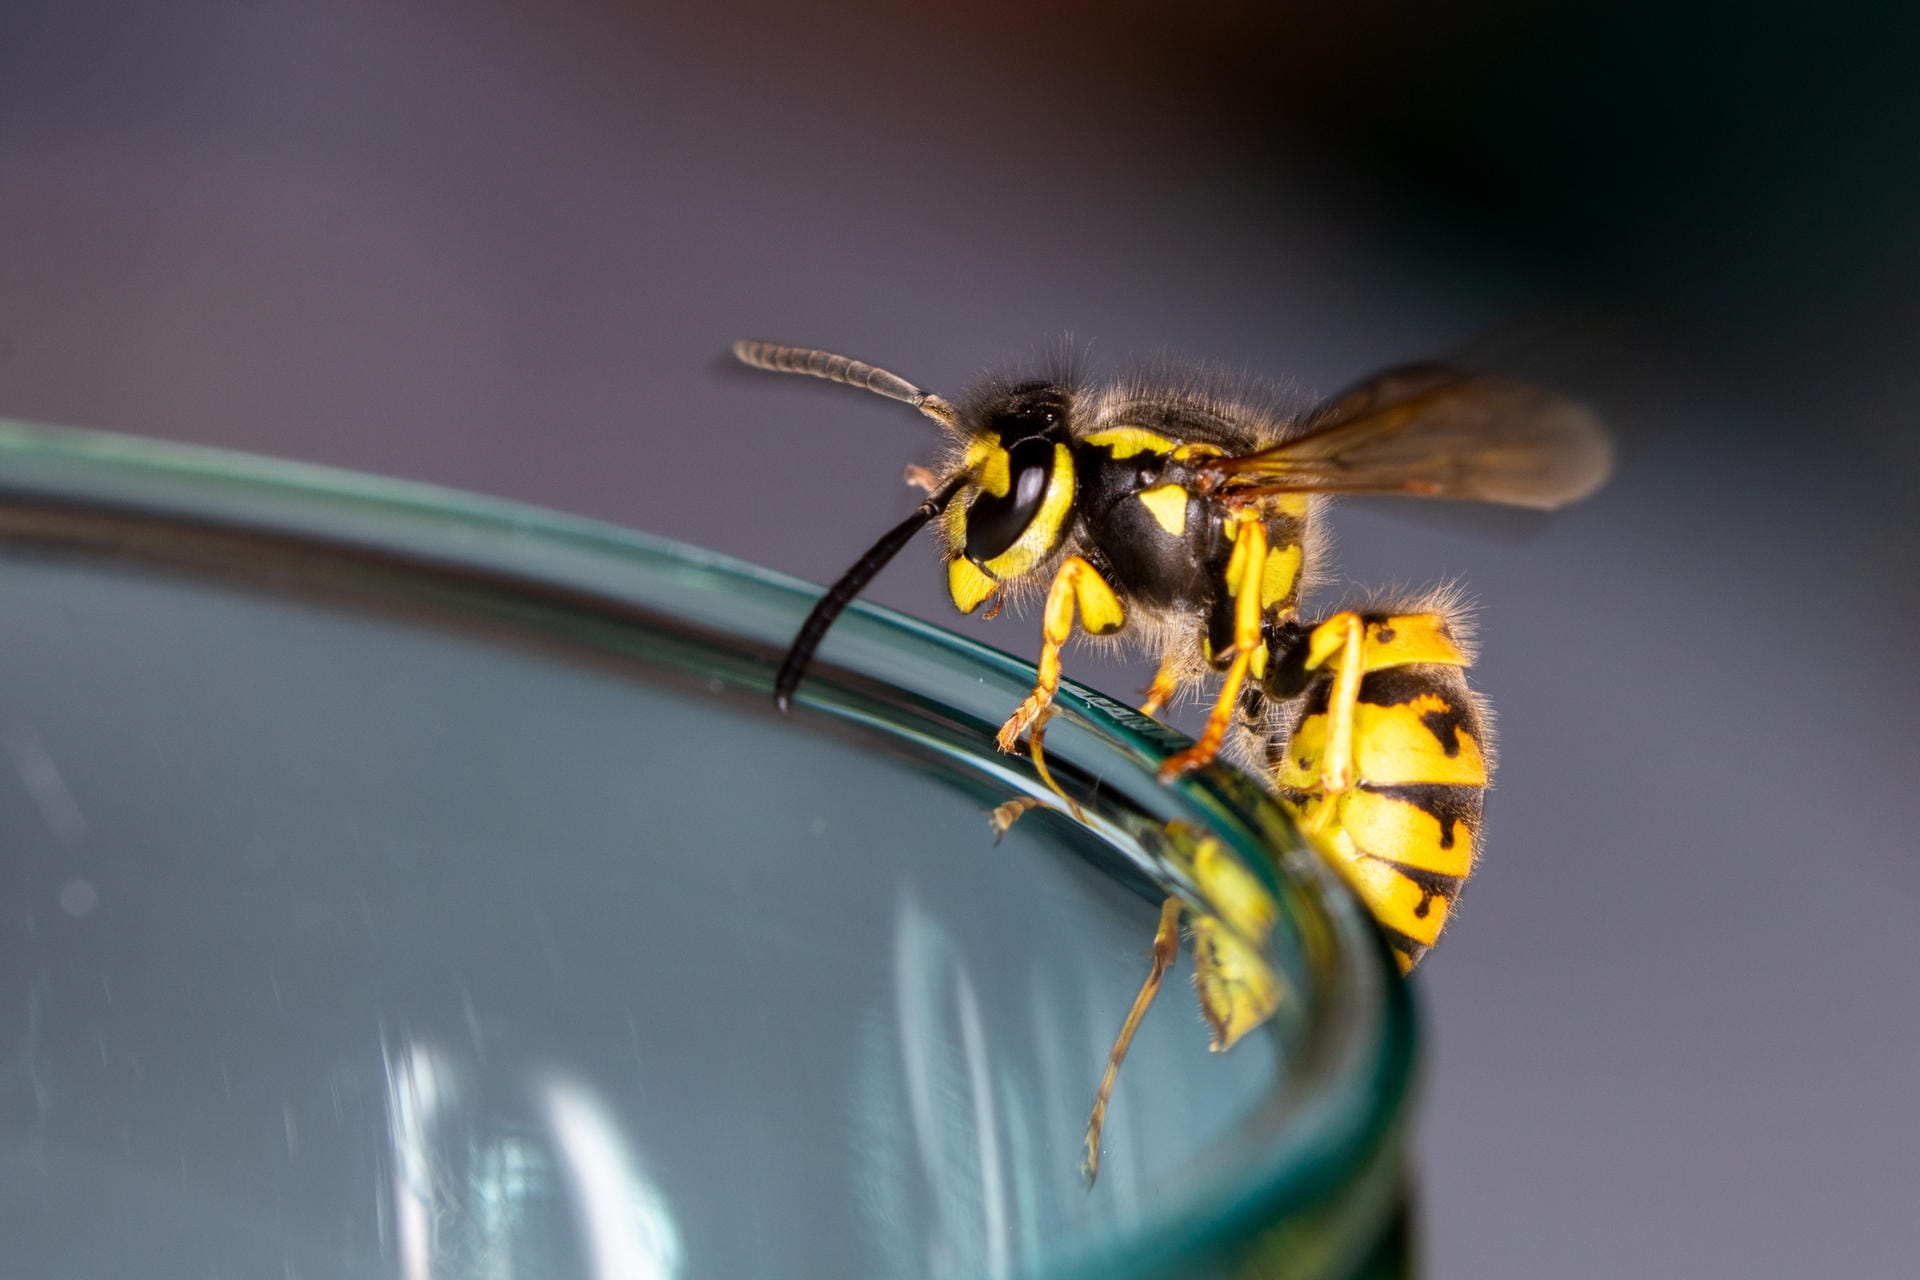 Achtung, giftig: Bei Allergikern kann ein Wespenstich kann tödlich enden.